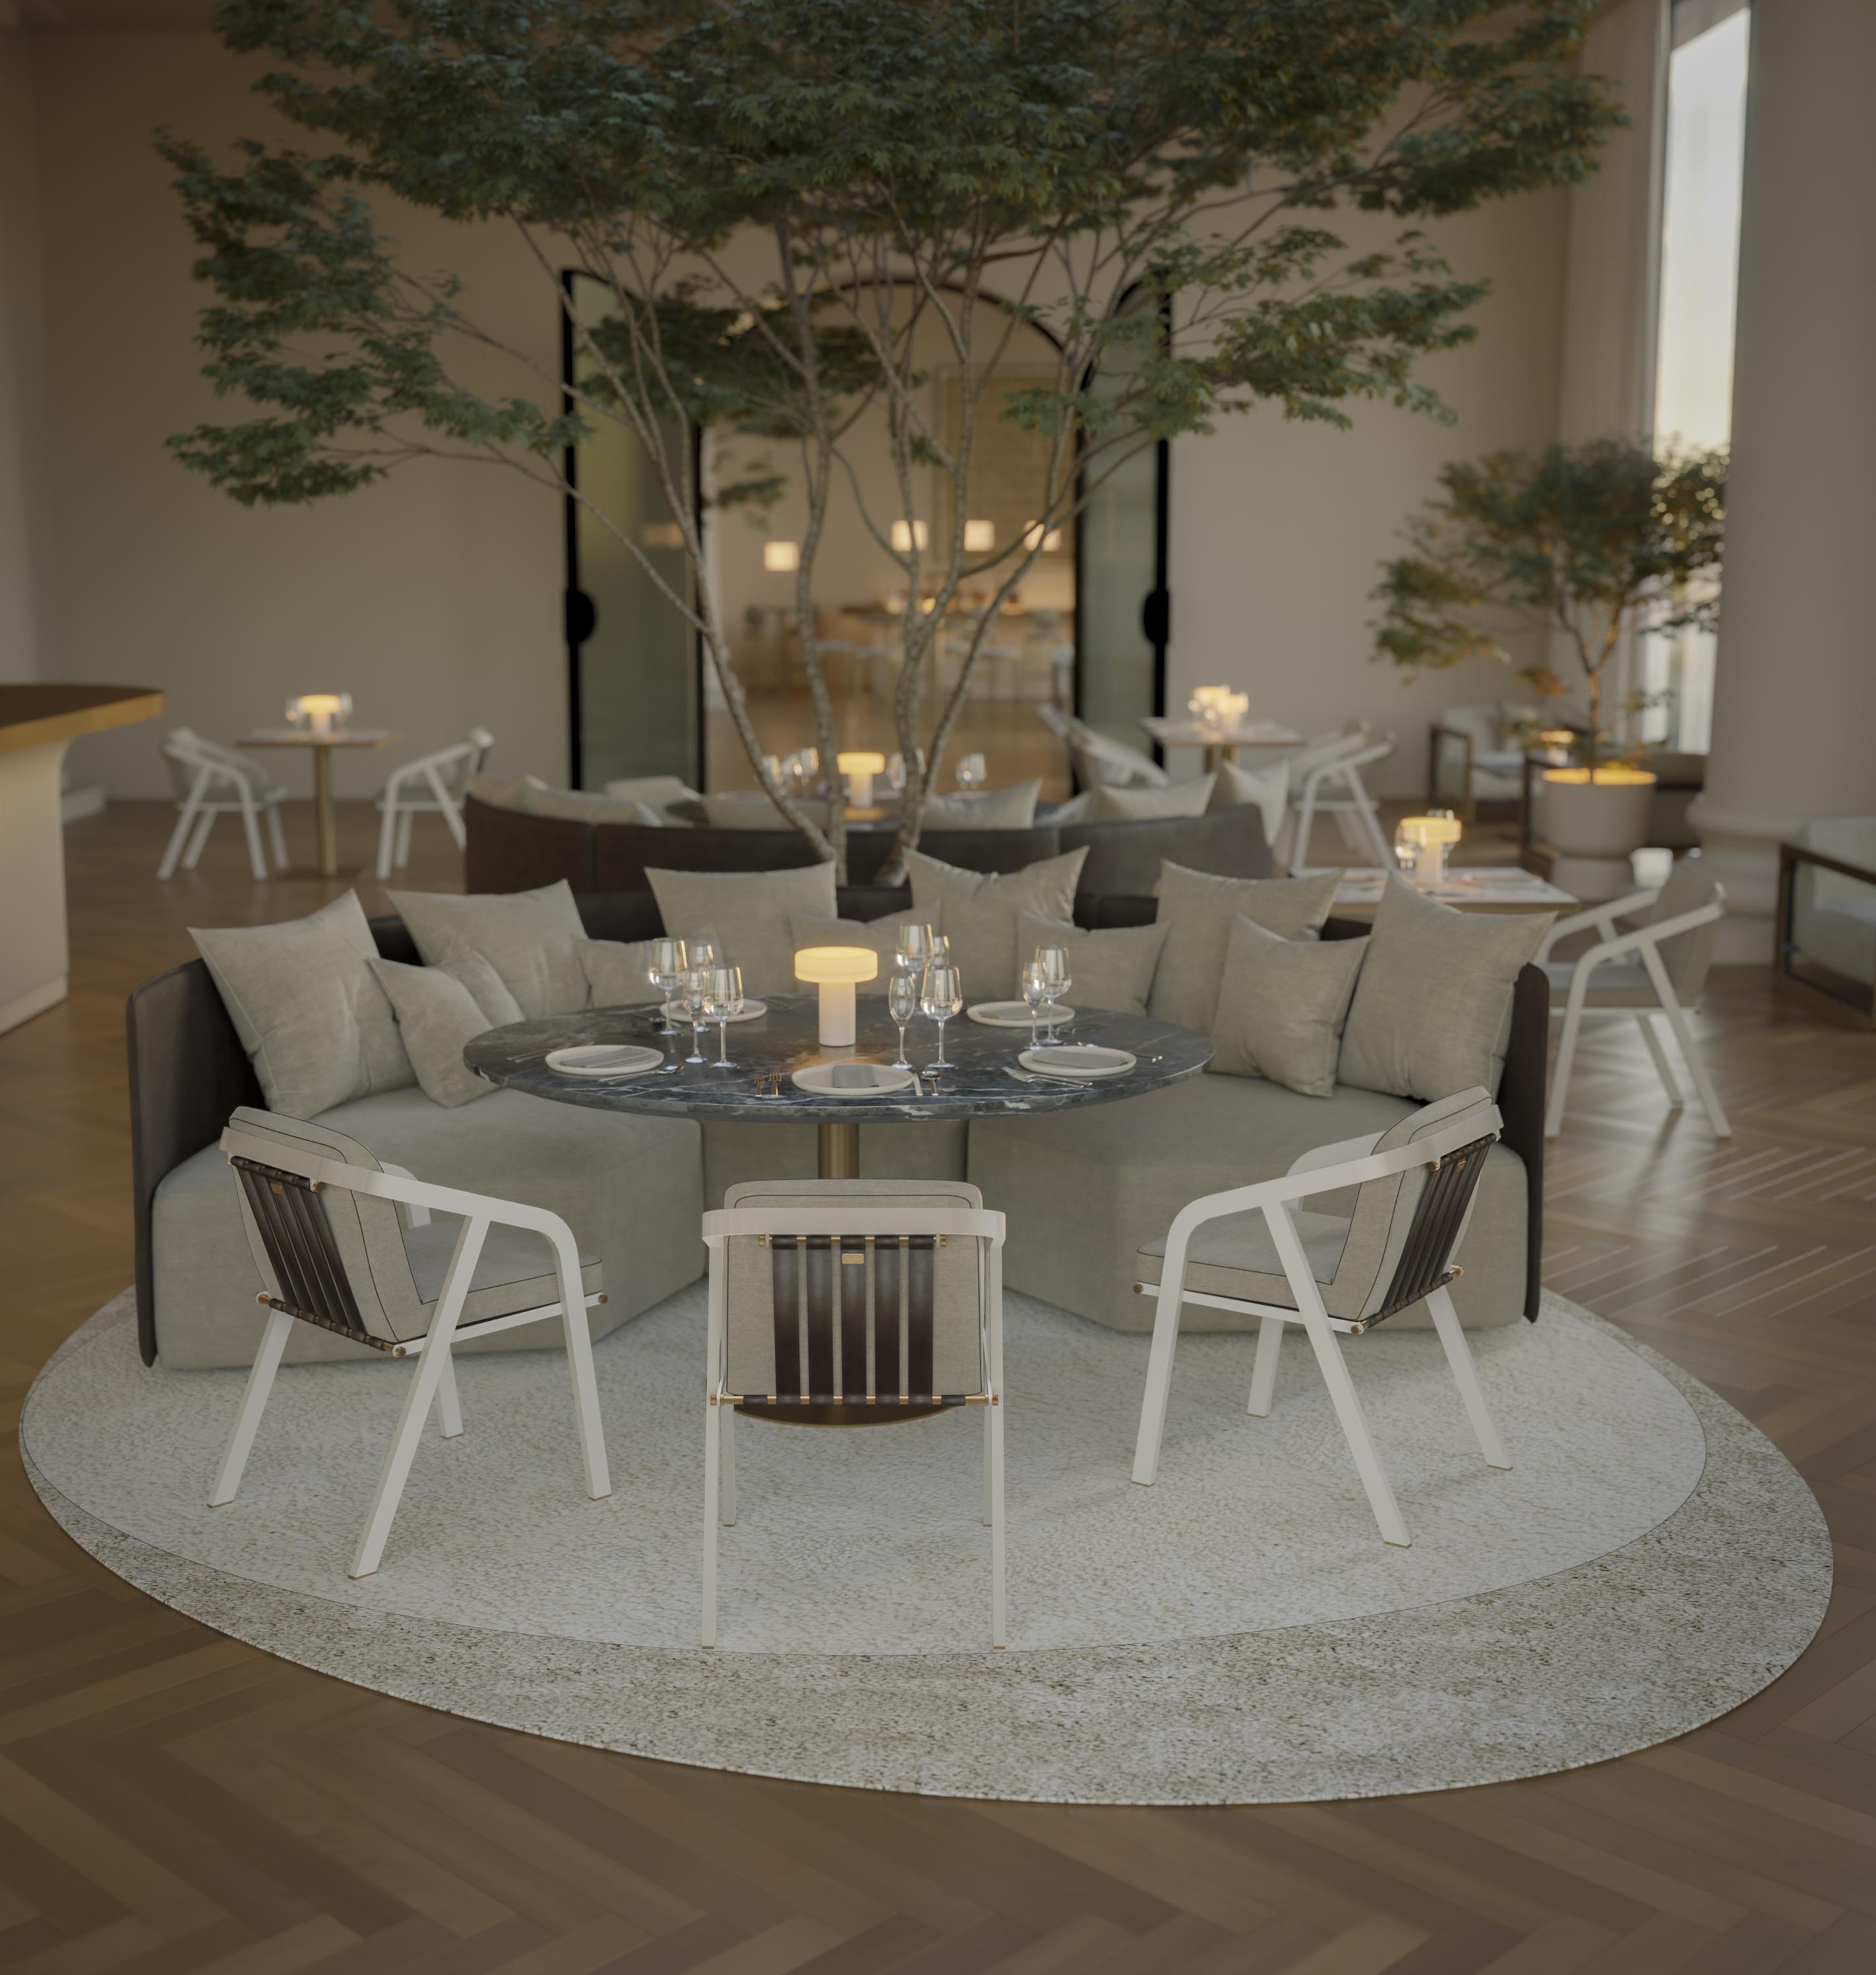 La table de salle à manger ronde Dawn s'avère être une option attrayante car elle présente un design moderne, parfait pour ajouter une touche d'élégance contemporaine à votre décor.

Sa composition fait appel à des matériaux de haute qualité,